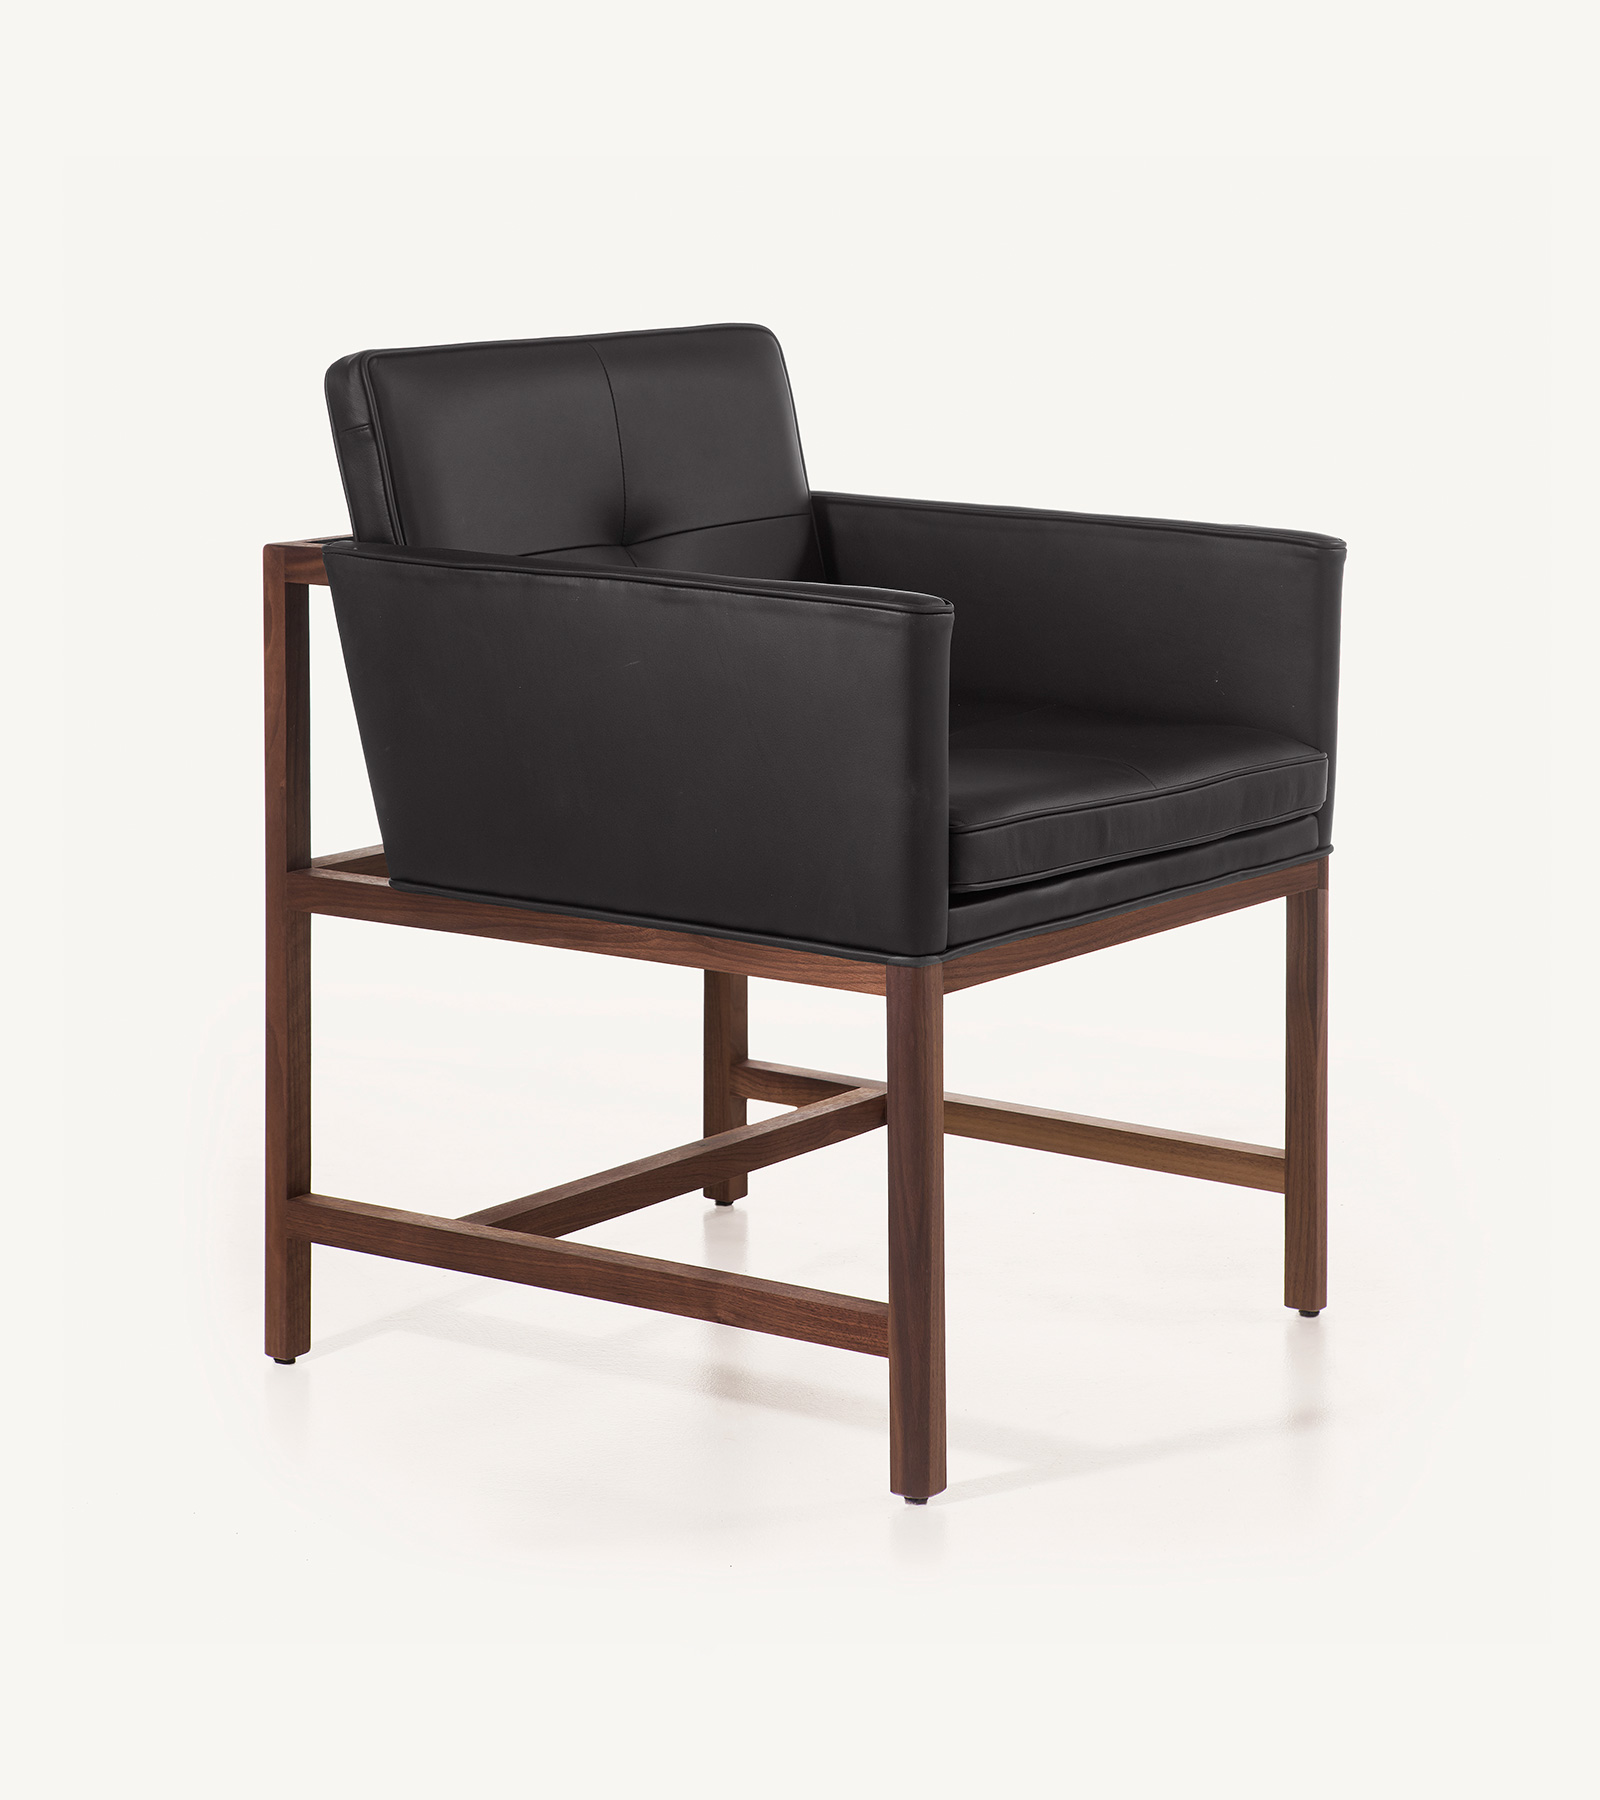 TinnappleMetz-bassamfellows-Wood-Frame-Chair-01